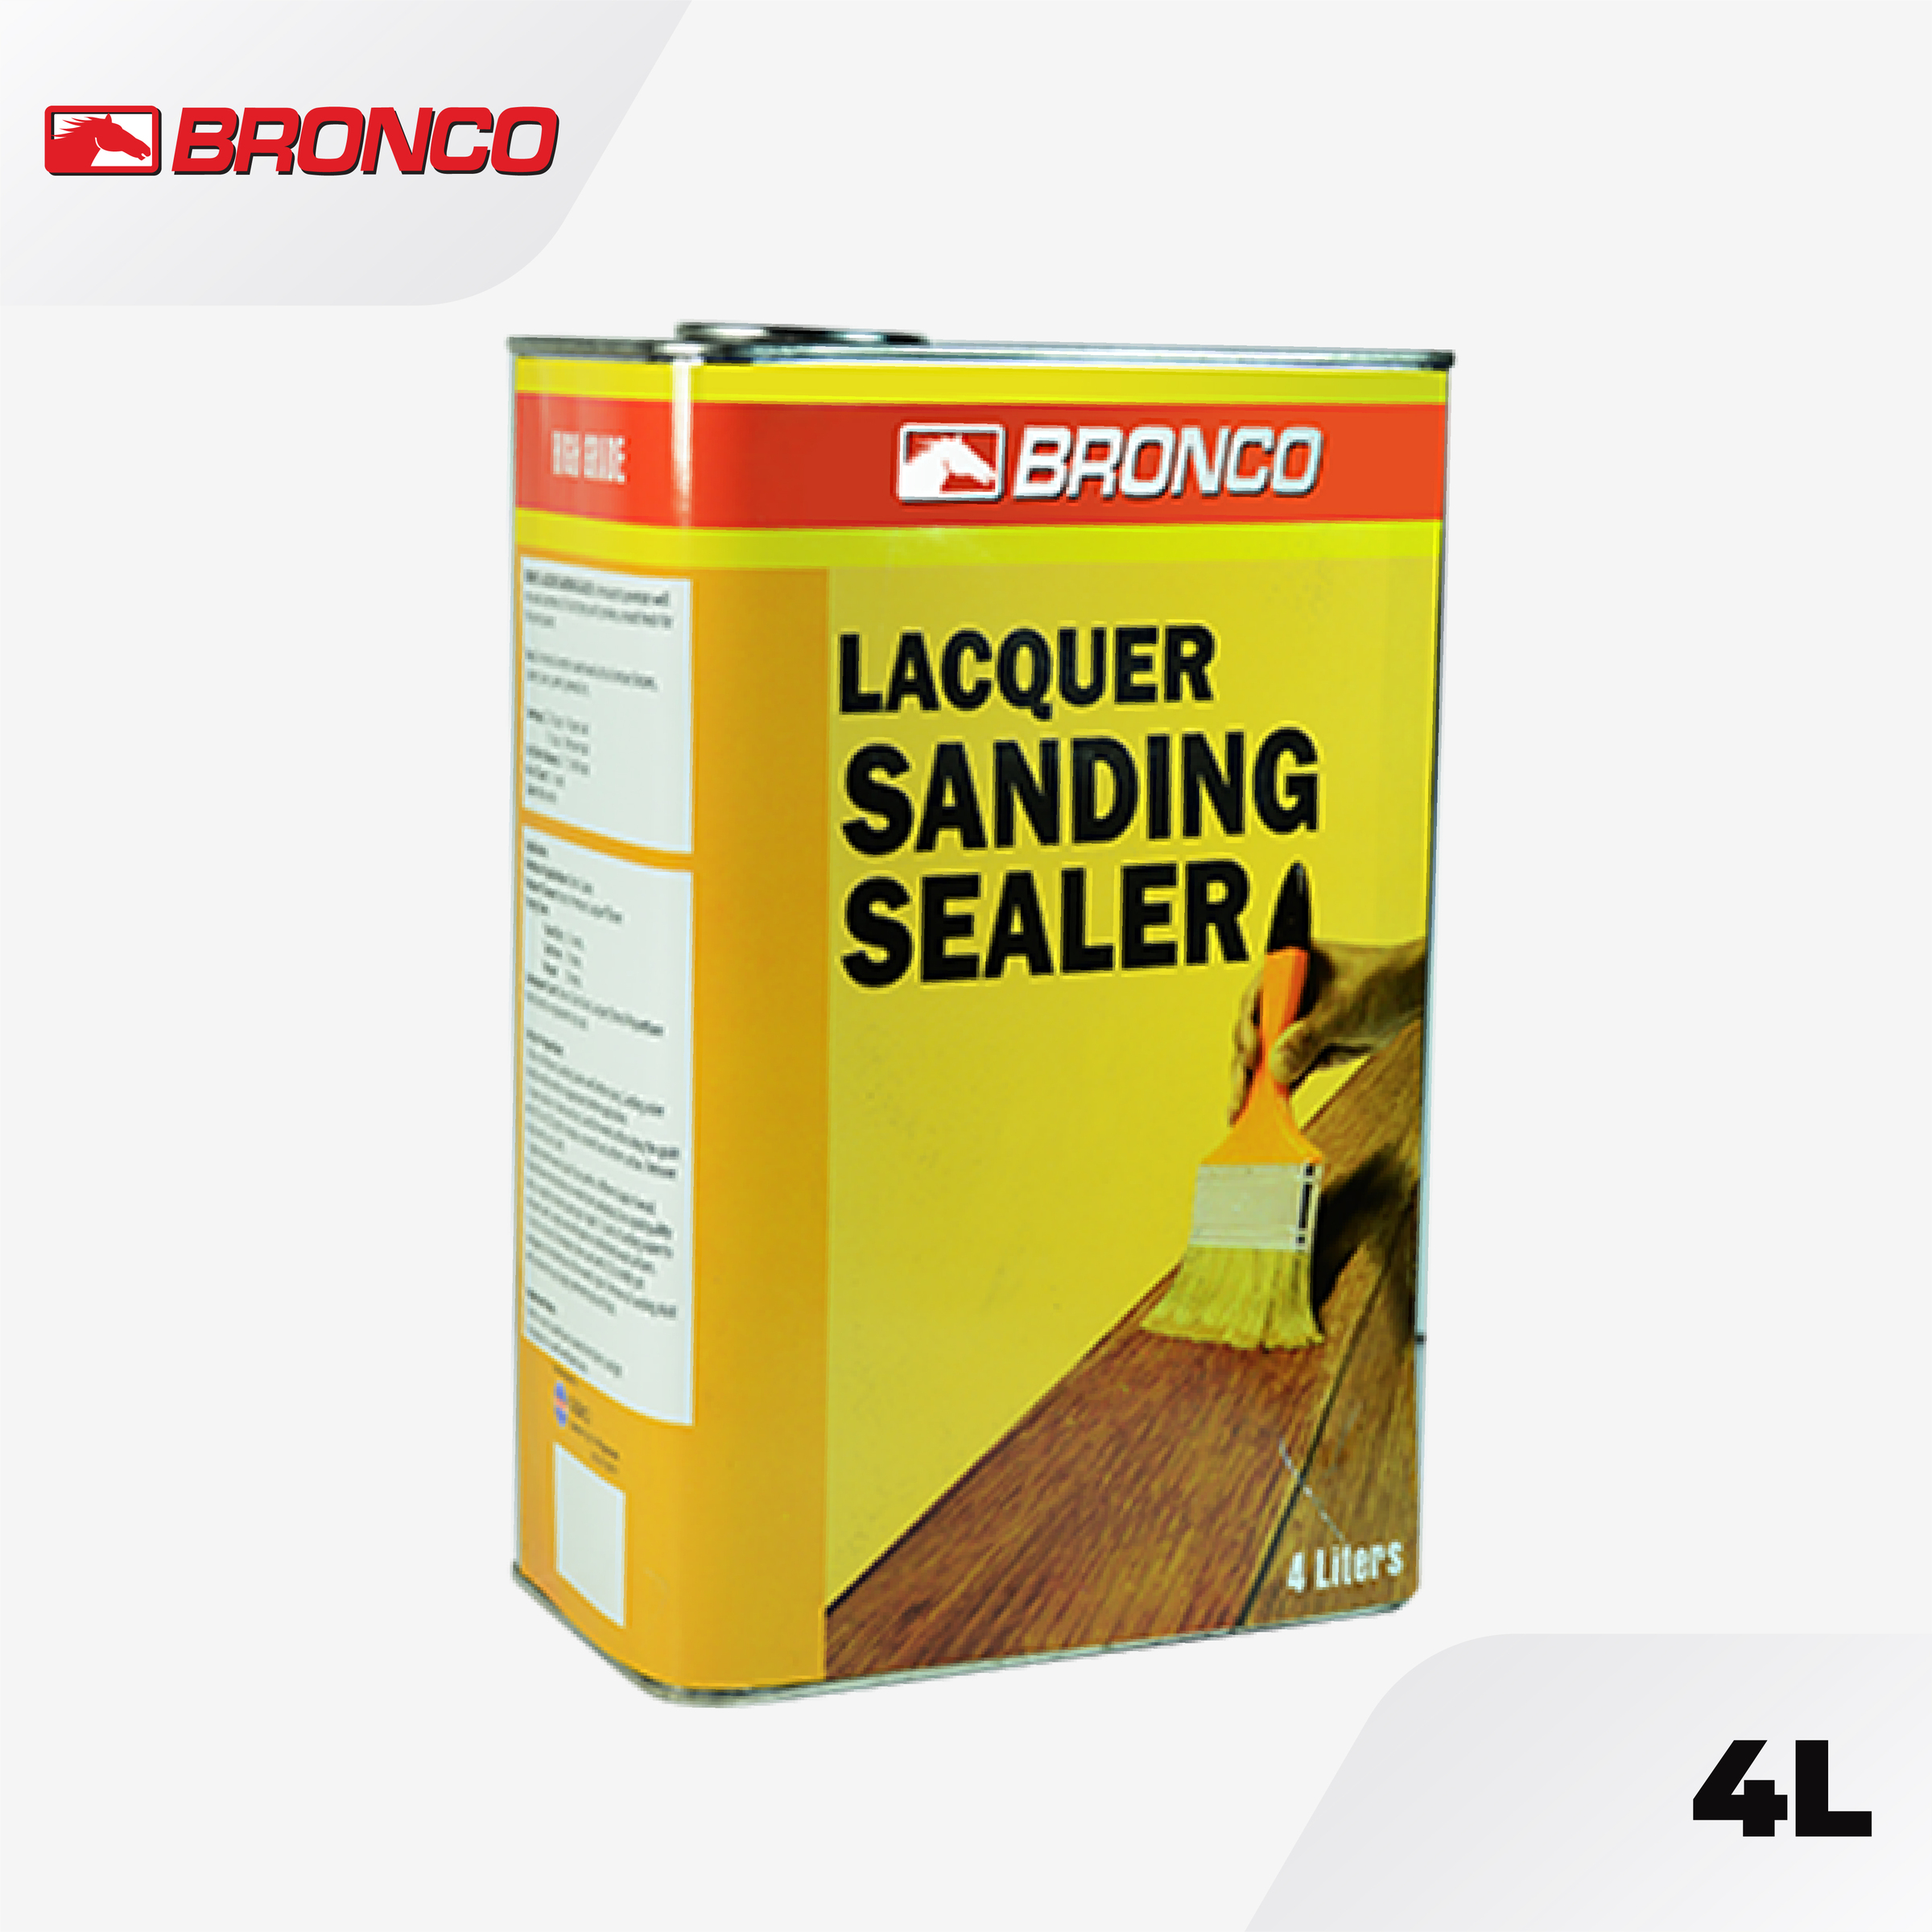 Bronco Lacquer Sanding Sealer 4L